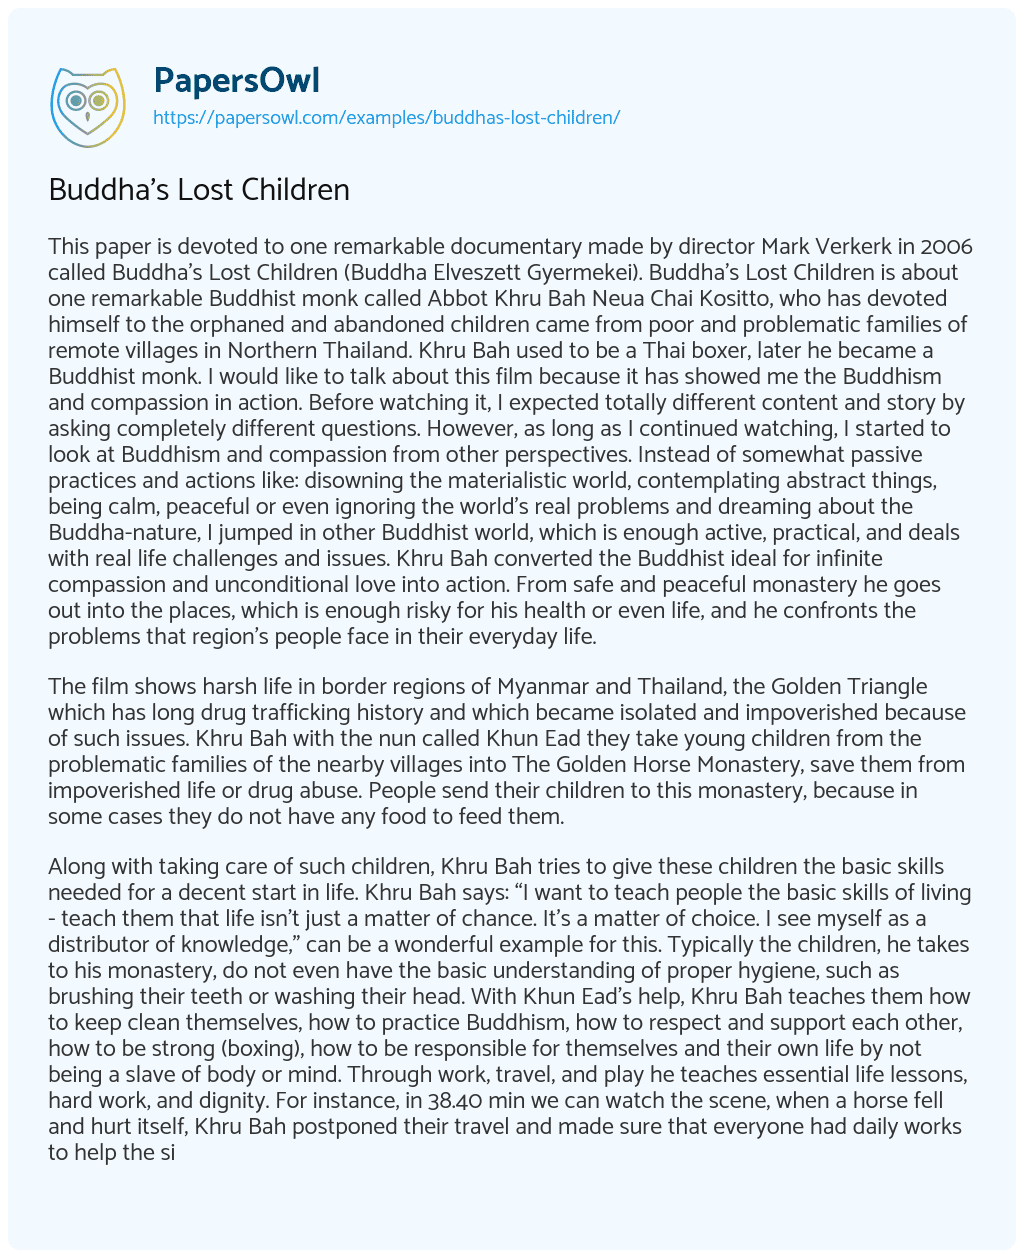 Essay on Buddha’s Lost Children